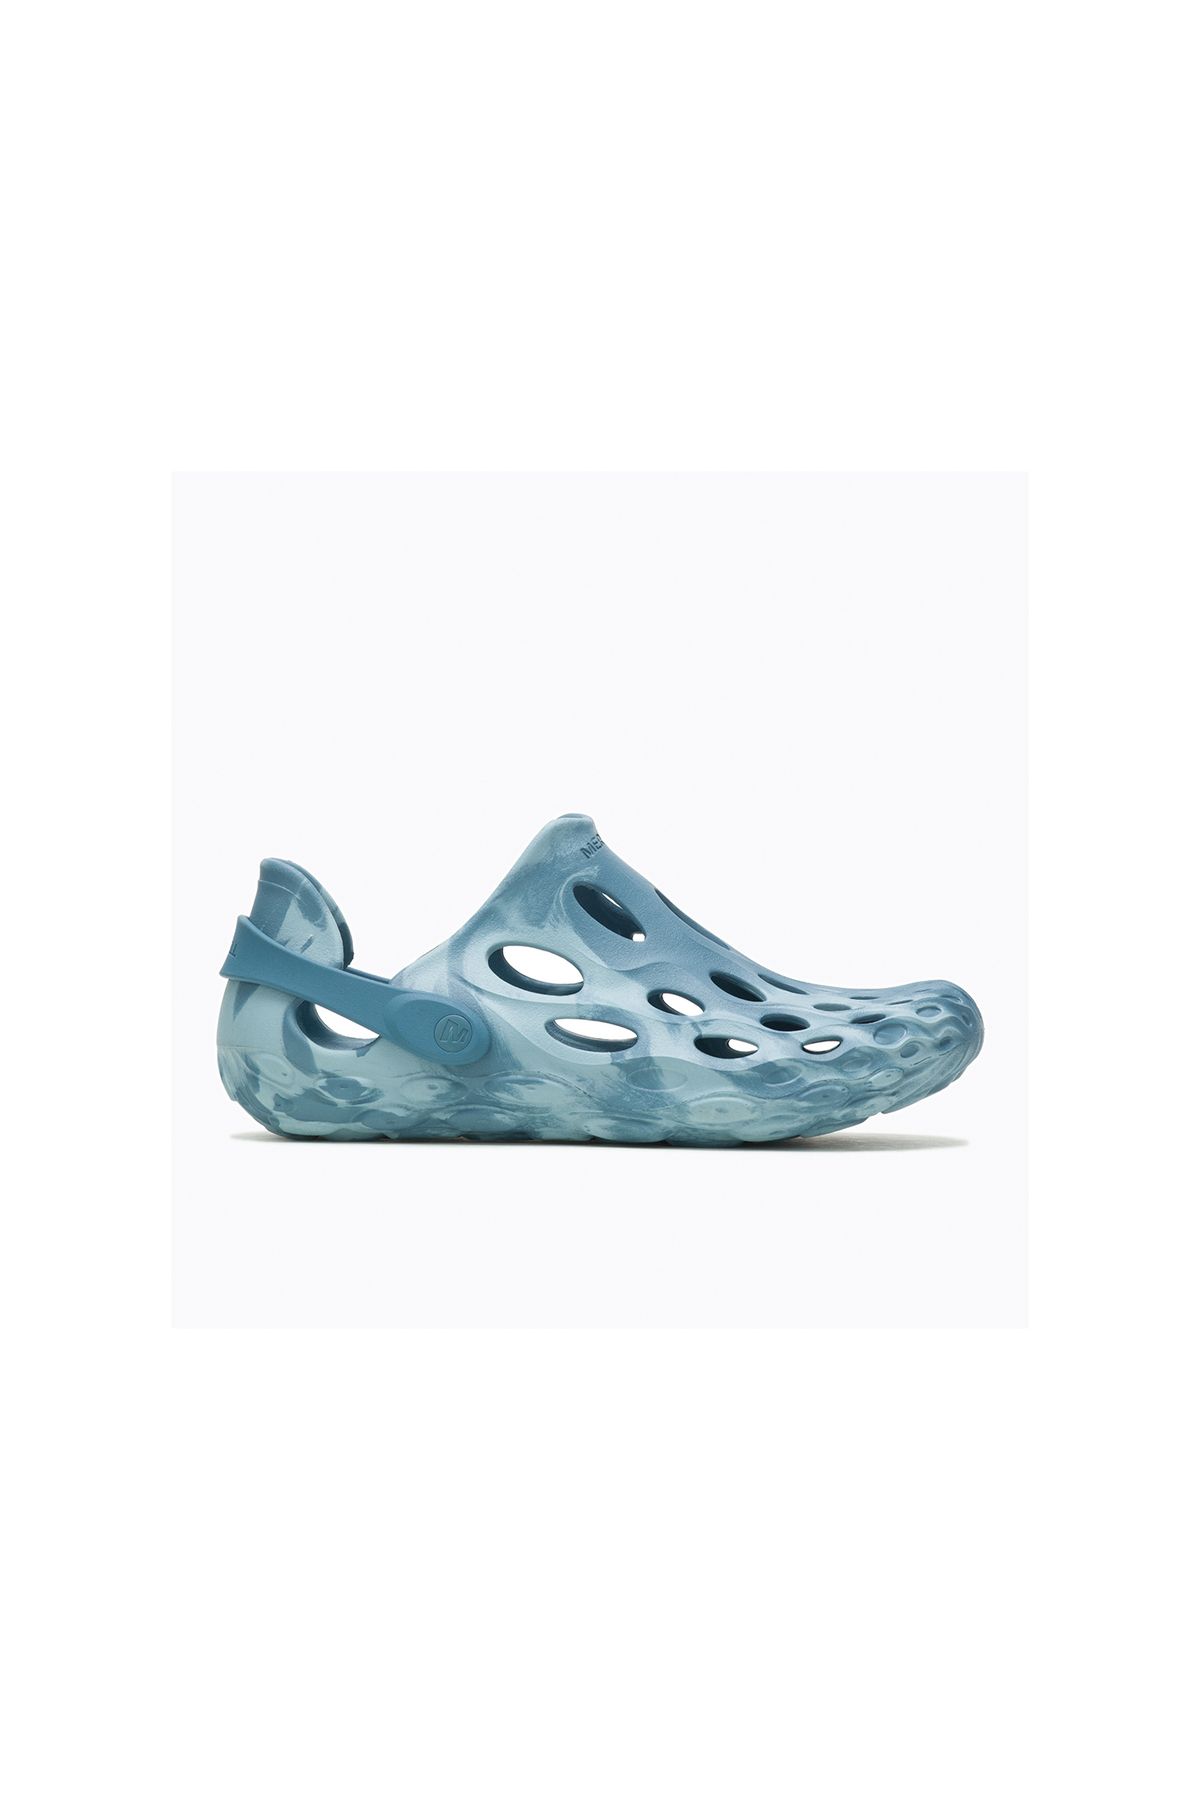 Merrell Hydro Moc Erkek Su Ayakkabısı